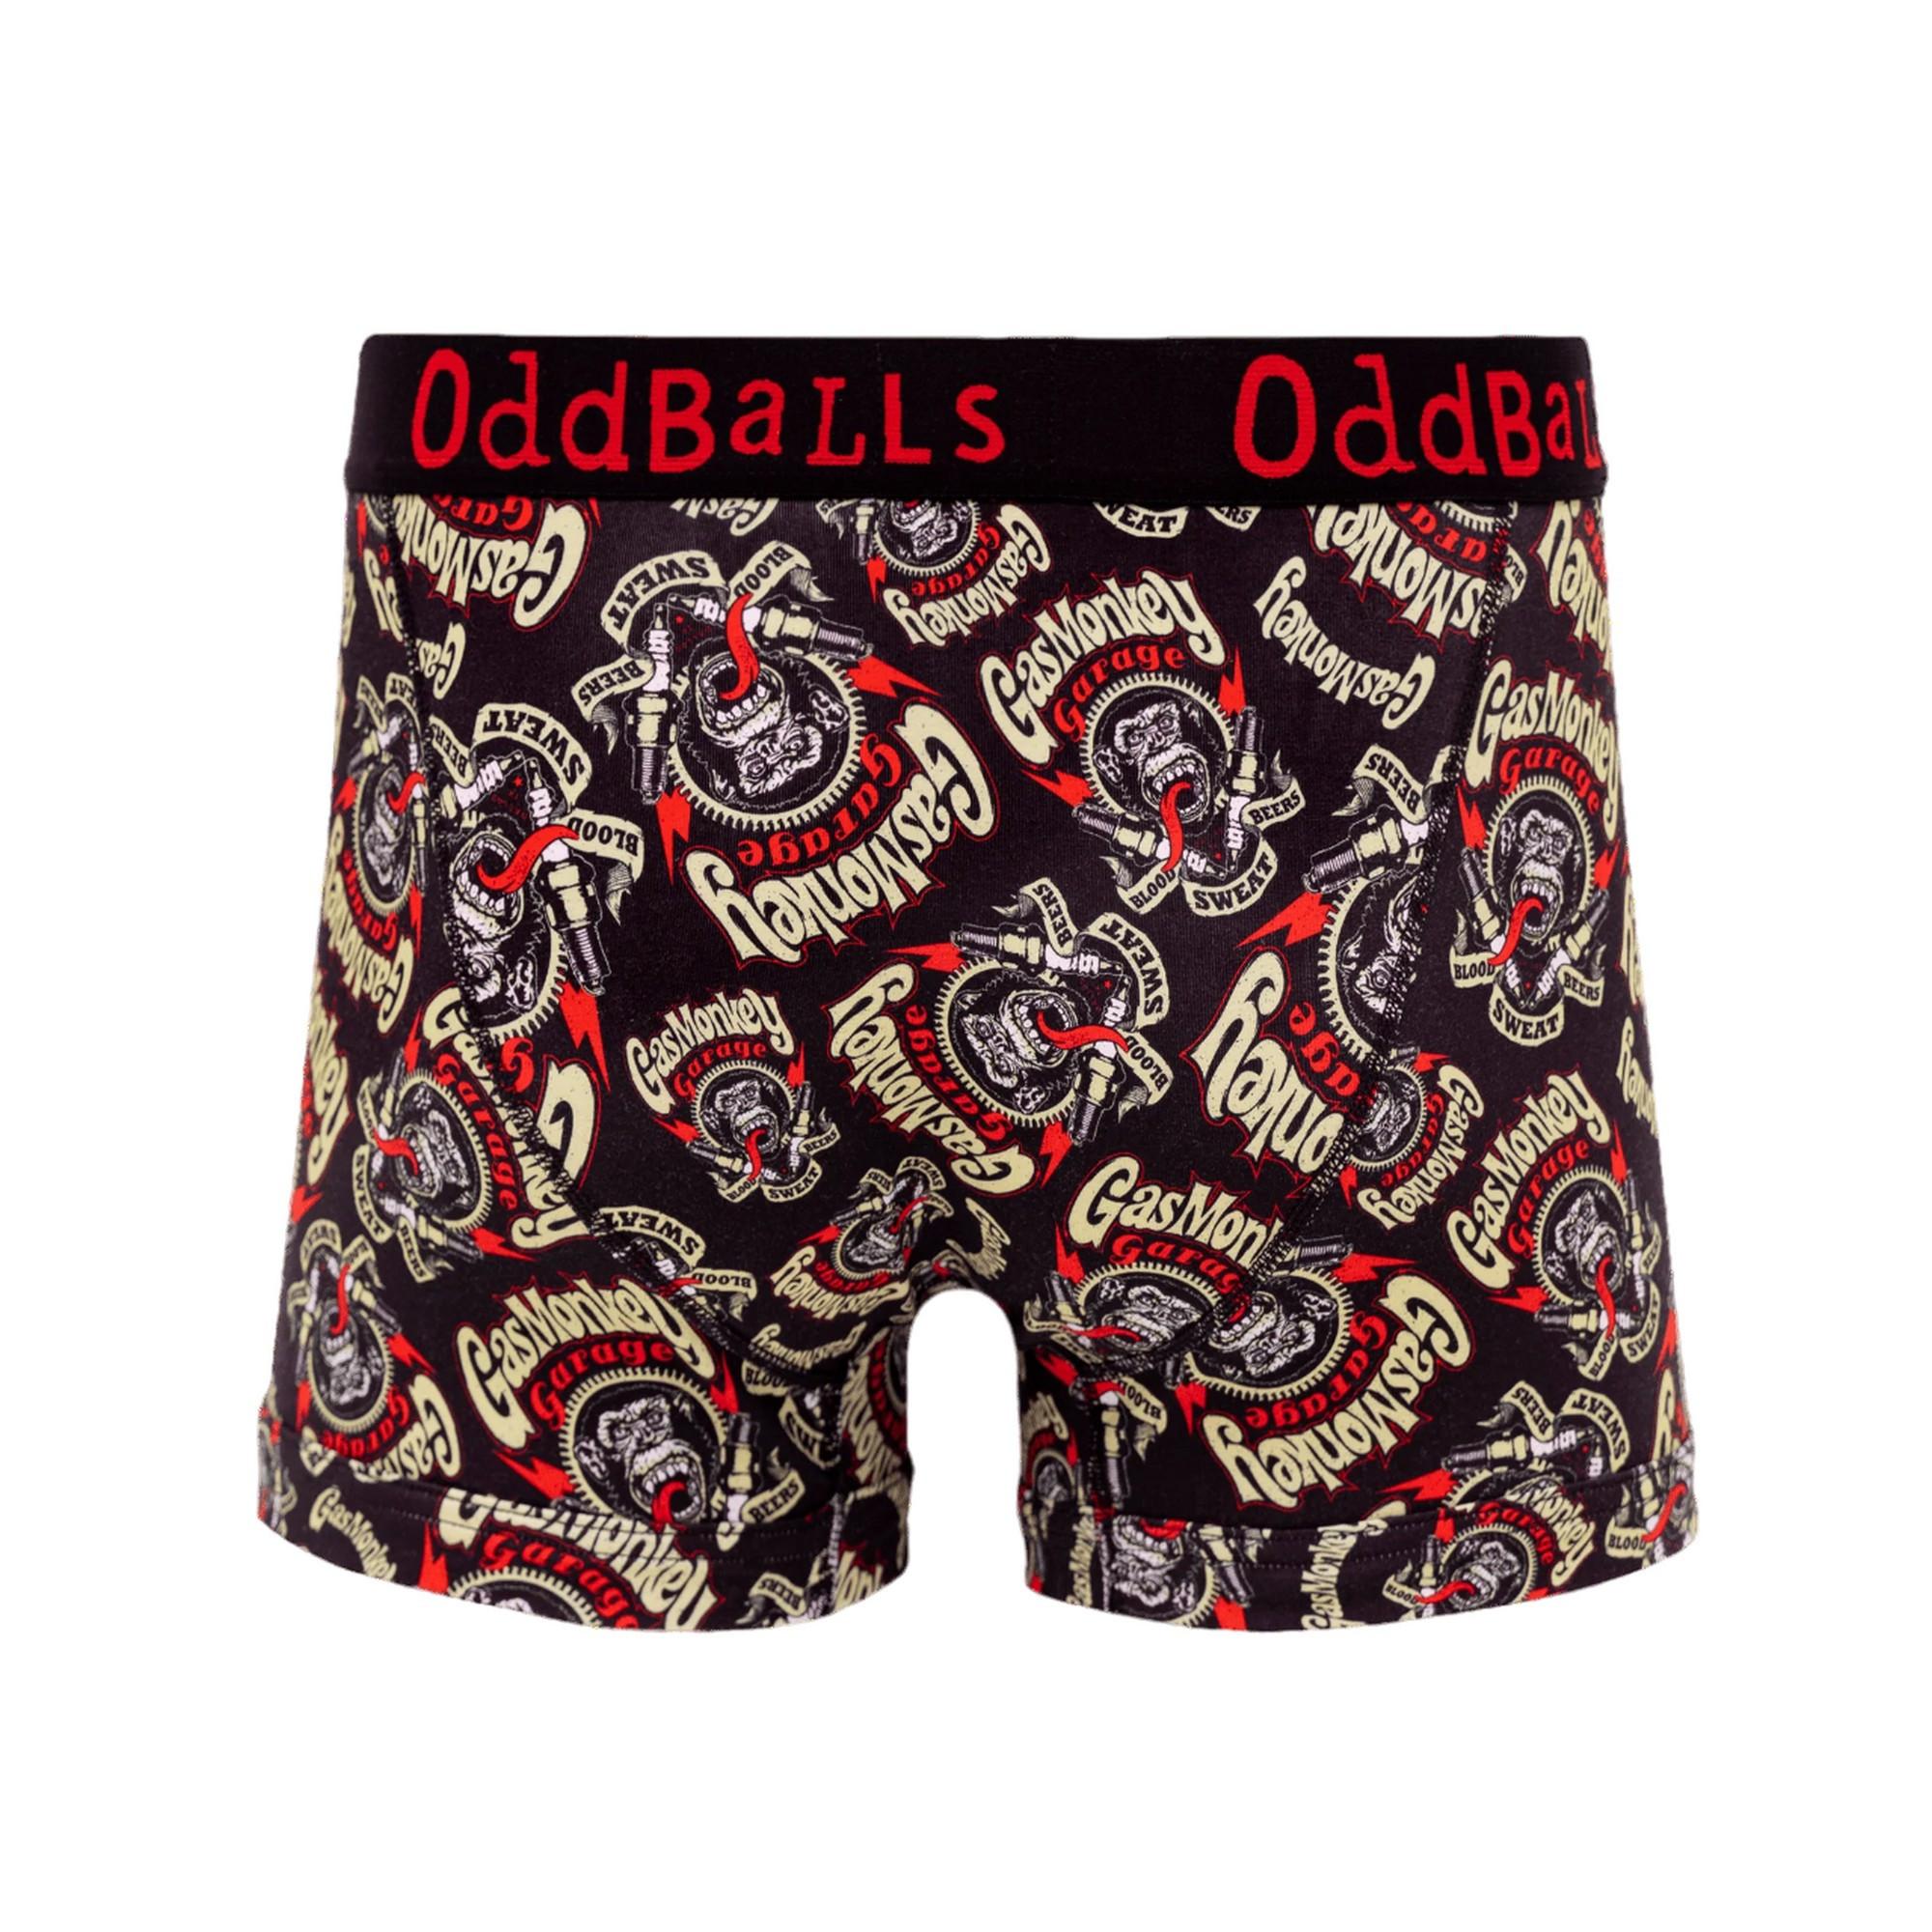 OddBalls  Boxershorts 